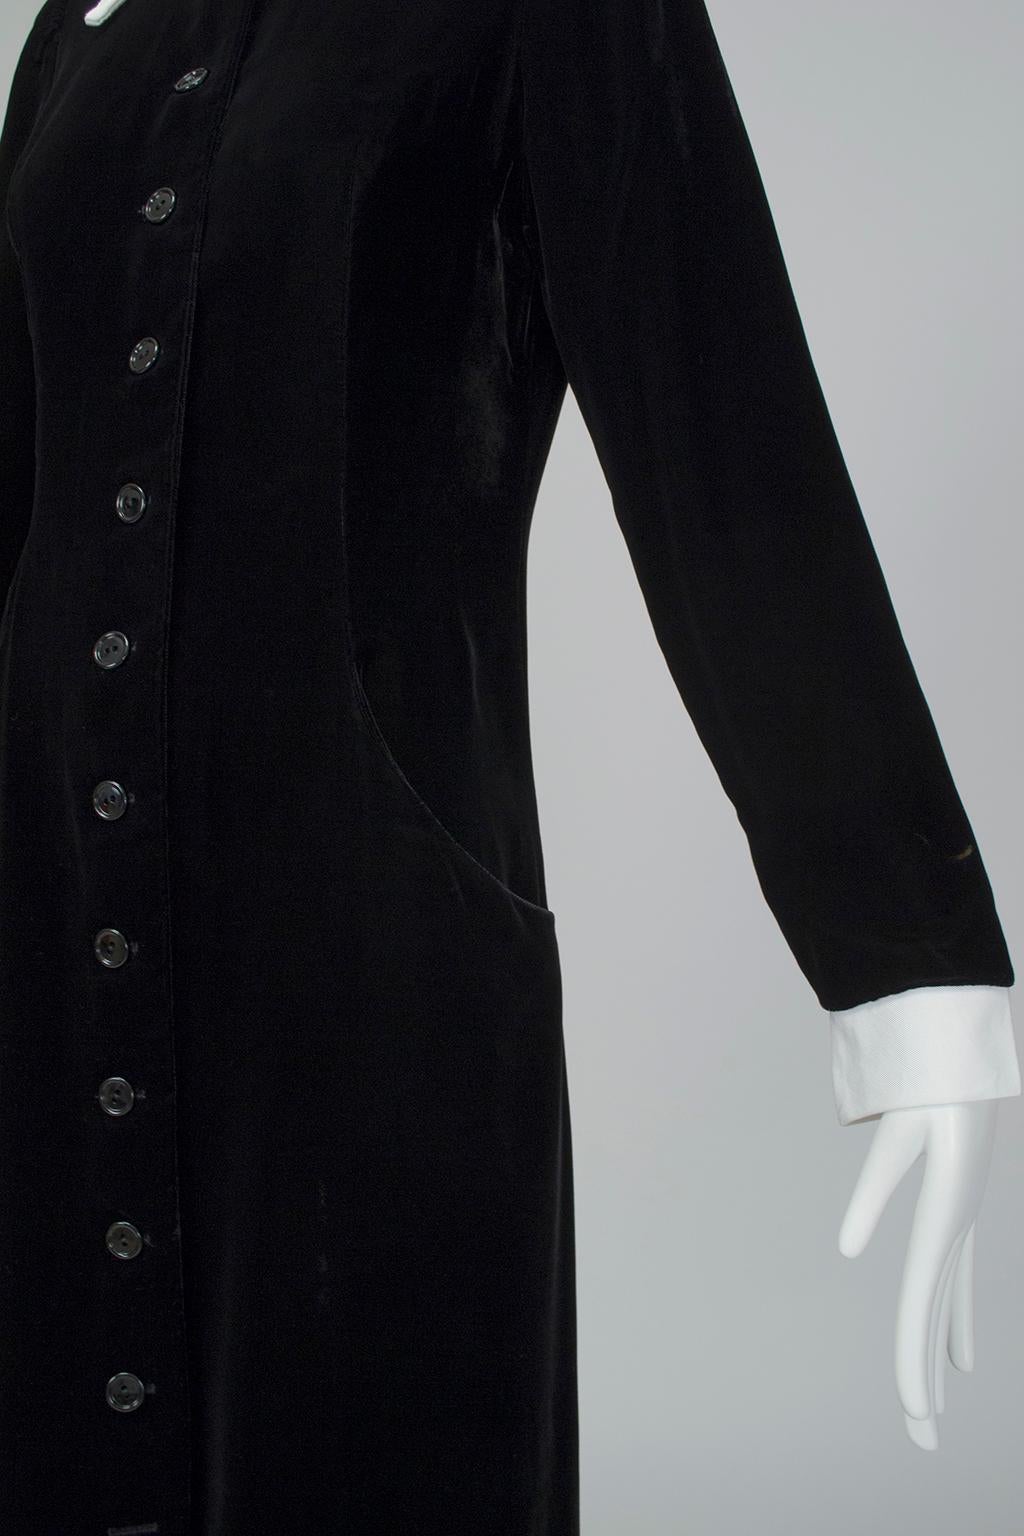 Minimalistisches Kleid aus schwarzem Samt mit weißem appliziertem Kragen - S:: 1940er Jahre 1